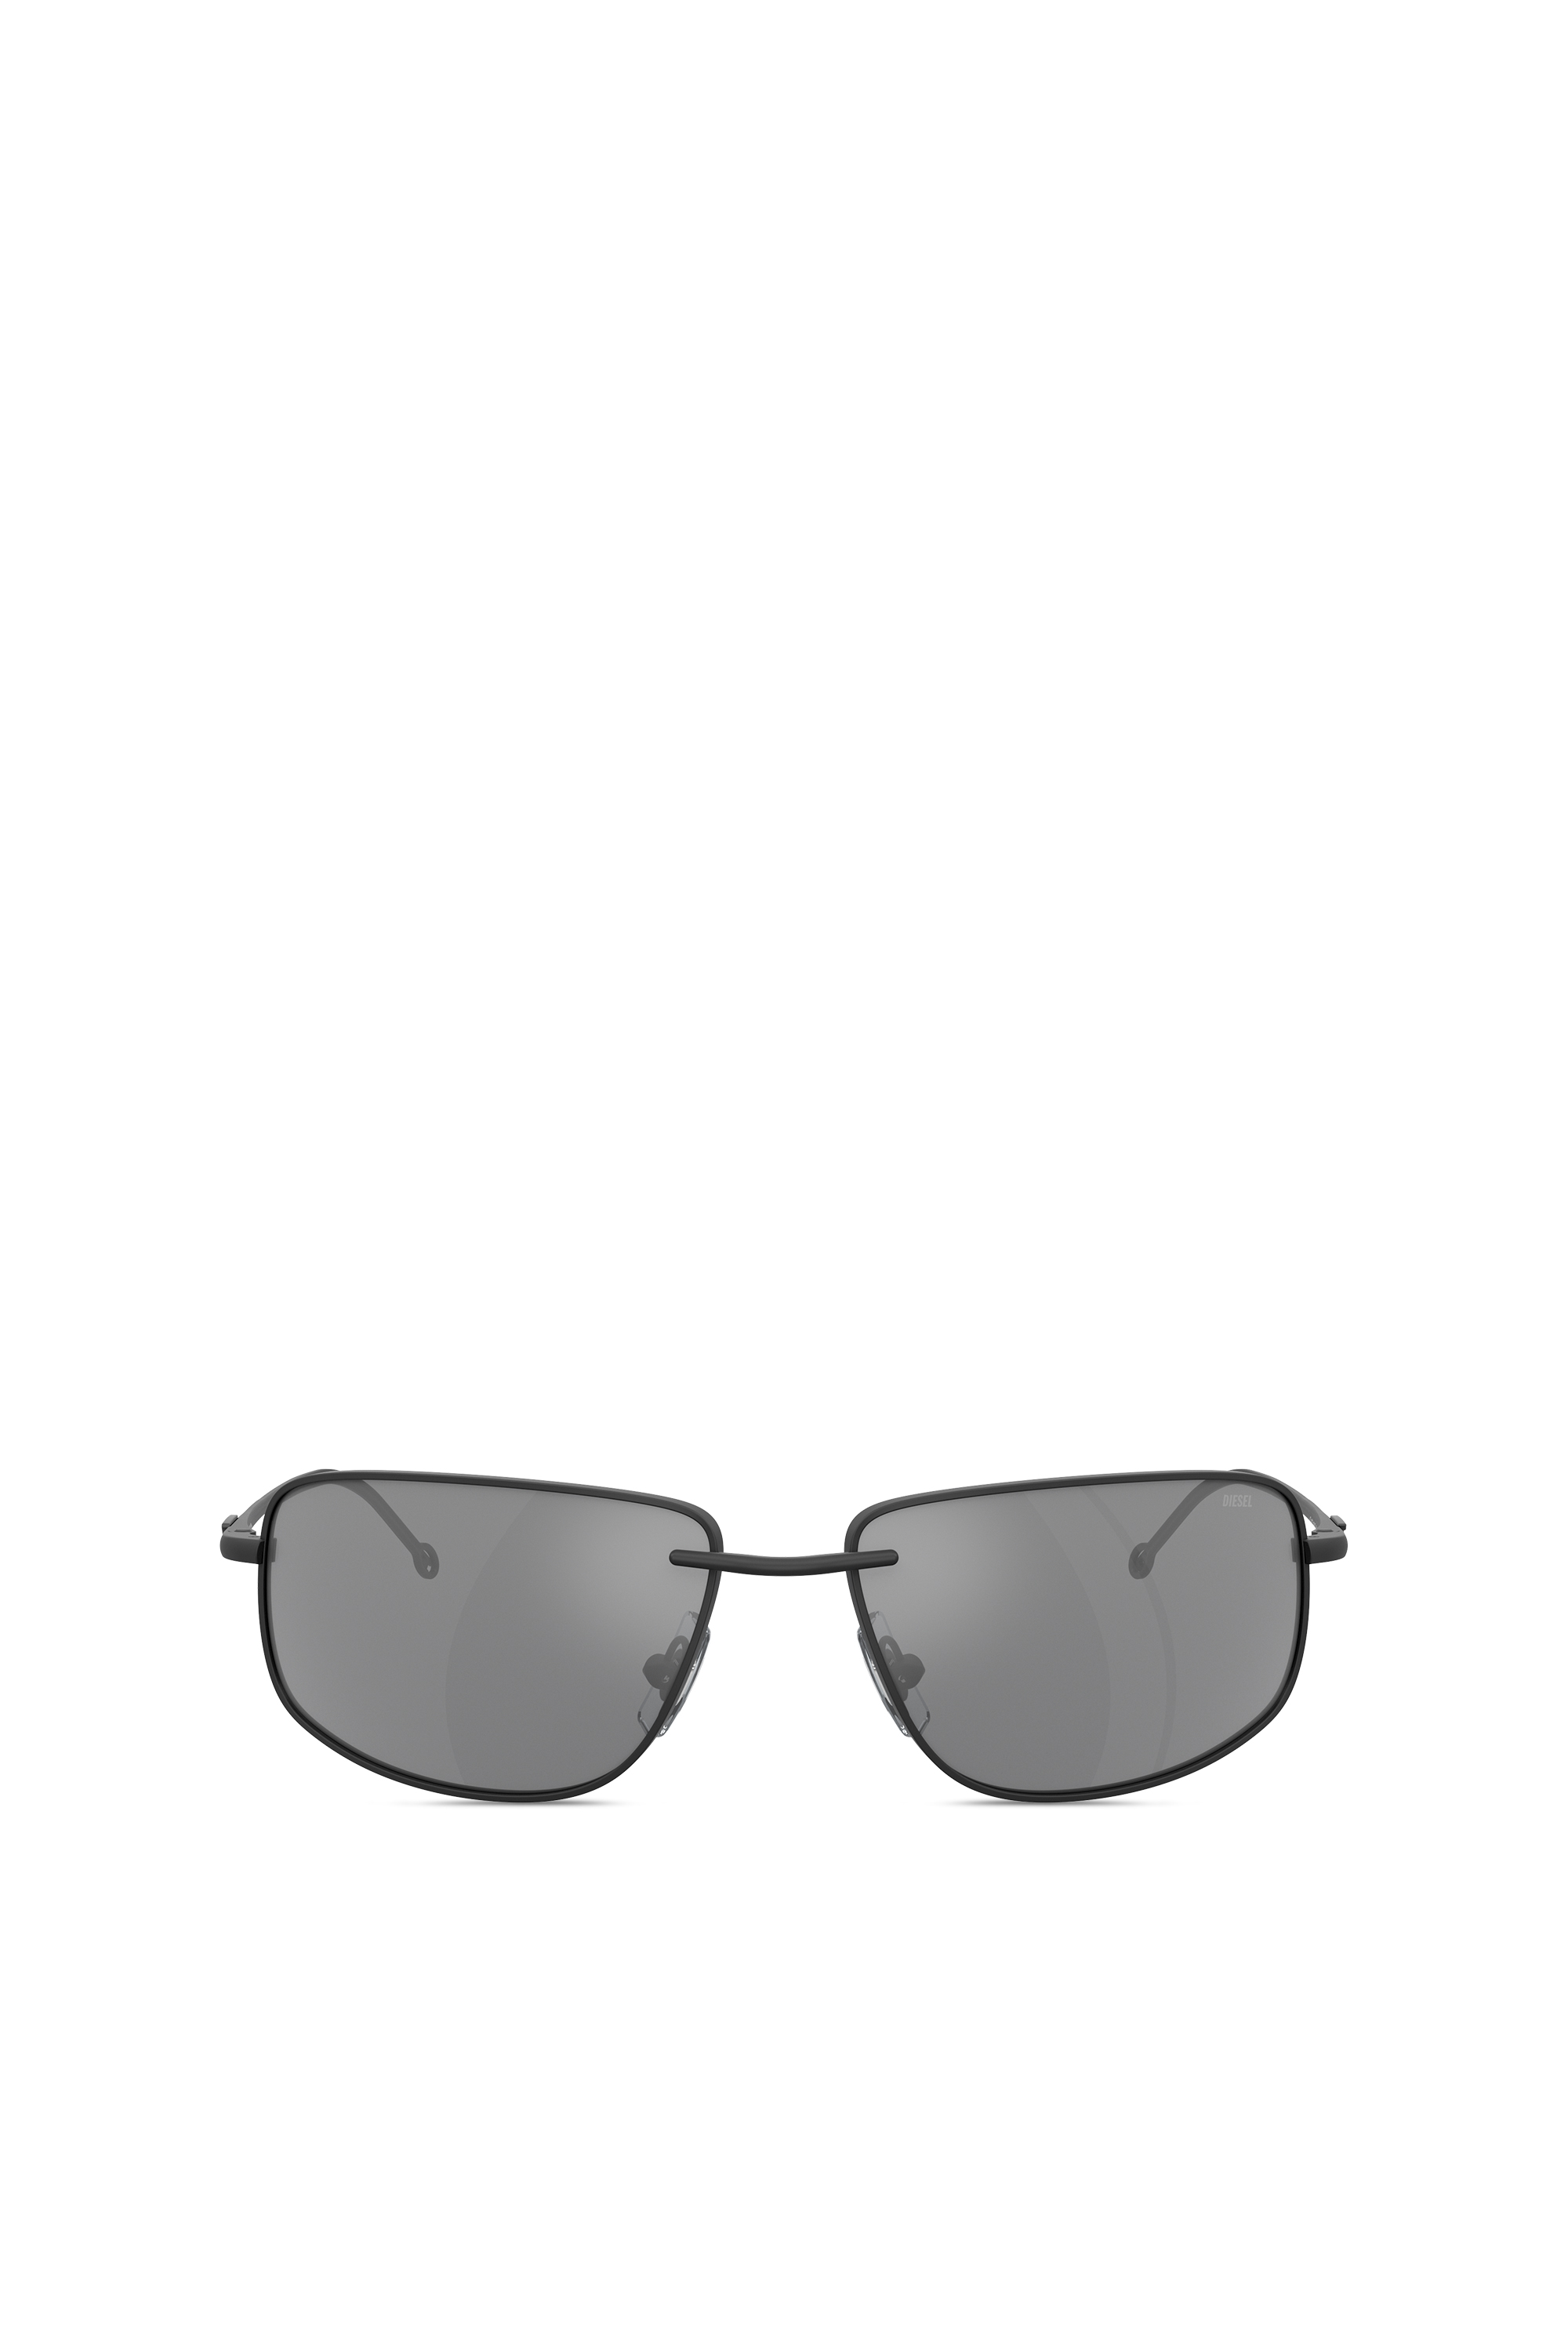 Diesel - Sonnenbrille in Racer-Form aus Metall - Sonnenbrille - Unisex - Schwarz